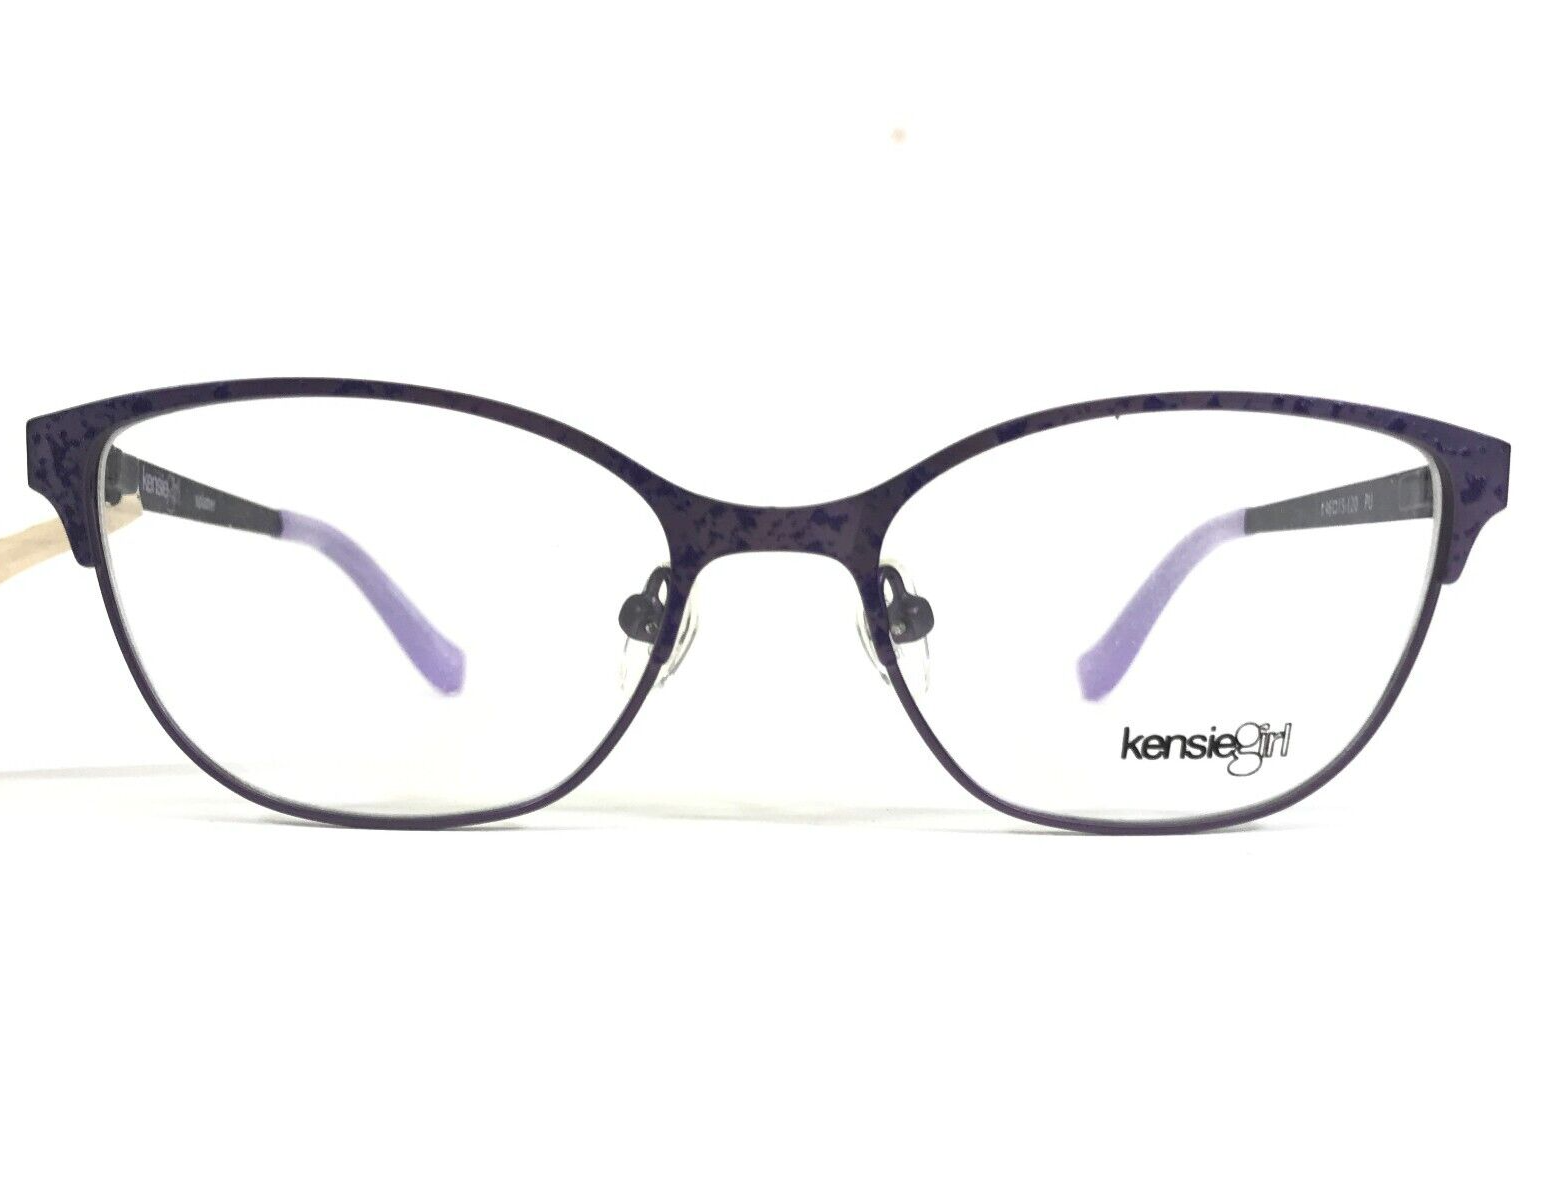 Primary image for Kensie Girl Kids Eyeglasses Frames Splatter PU Purple Cat Eye Full Rim 46-15-120